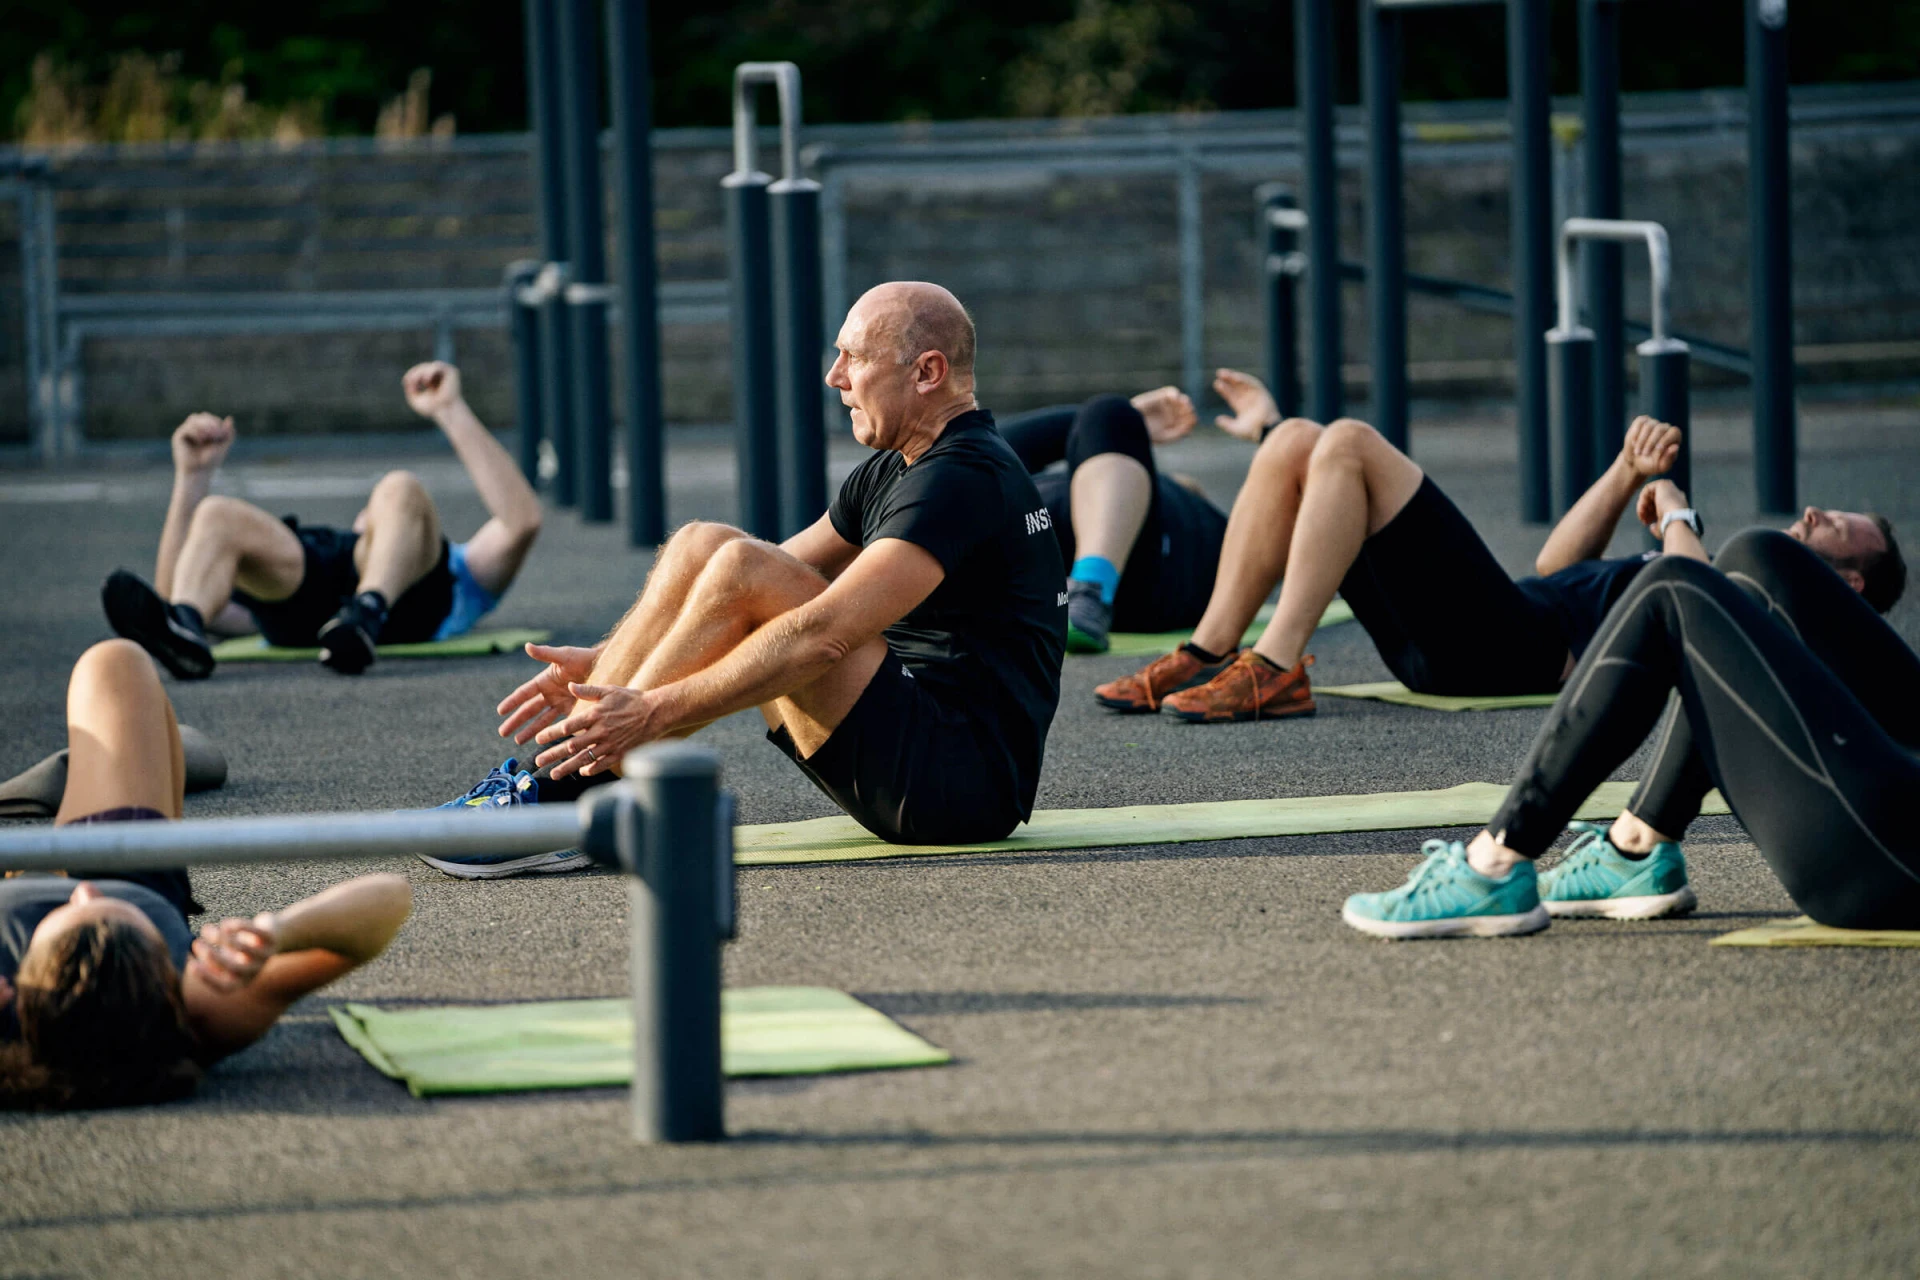 en gruppe mennesker som trener i en utendørs gymnastikksal i en park.